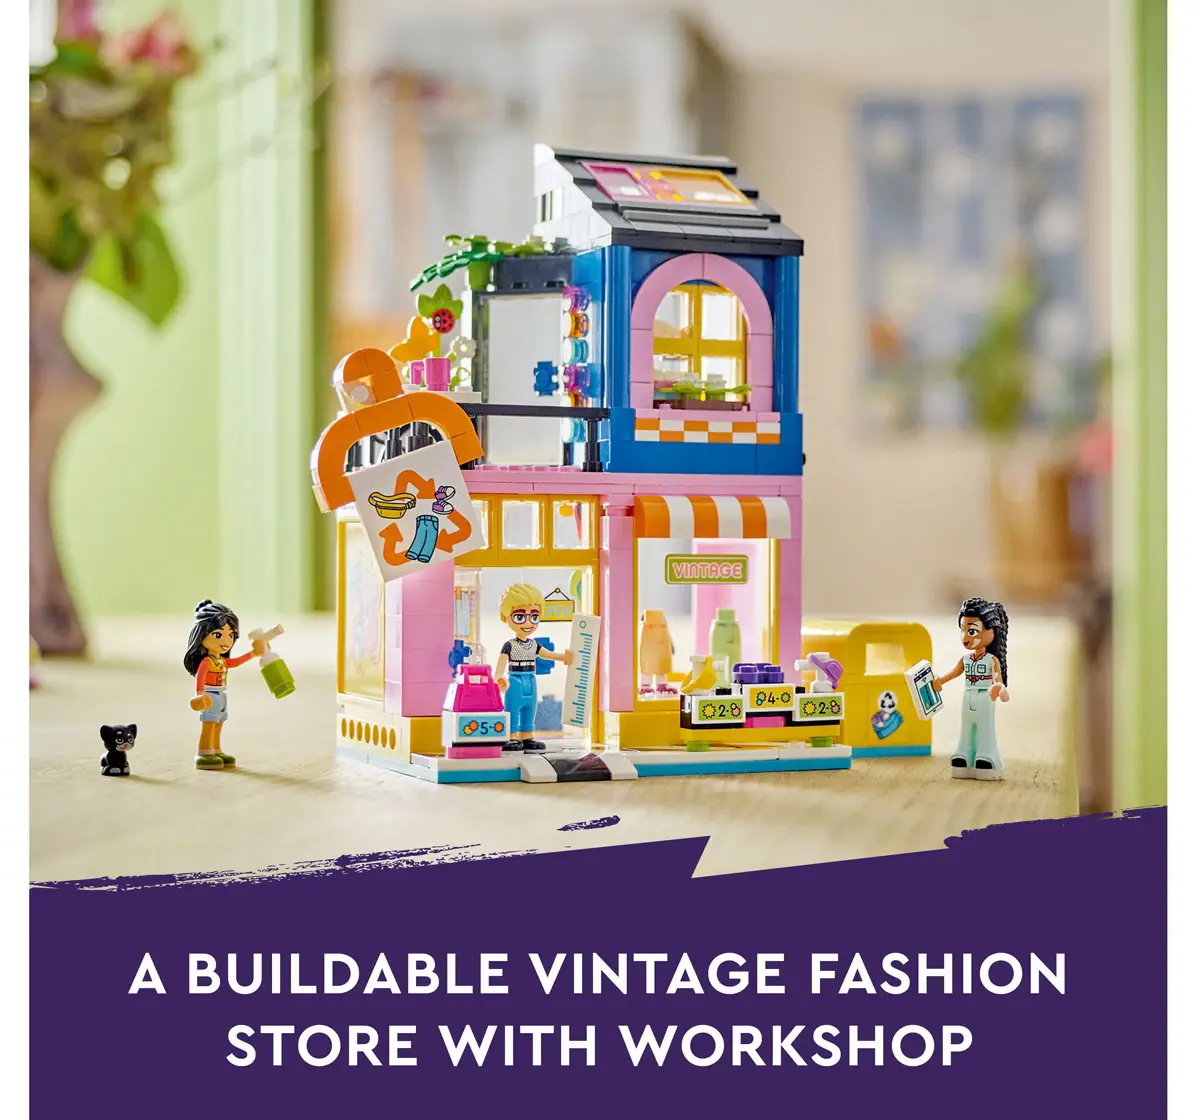 Lego Friends Vintage Fashion Store Toy Shop 42614 Multicolour For Kids Ages 6Y+ (409 Pieces) 